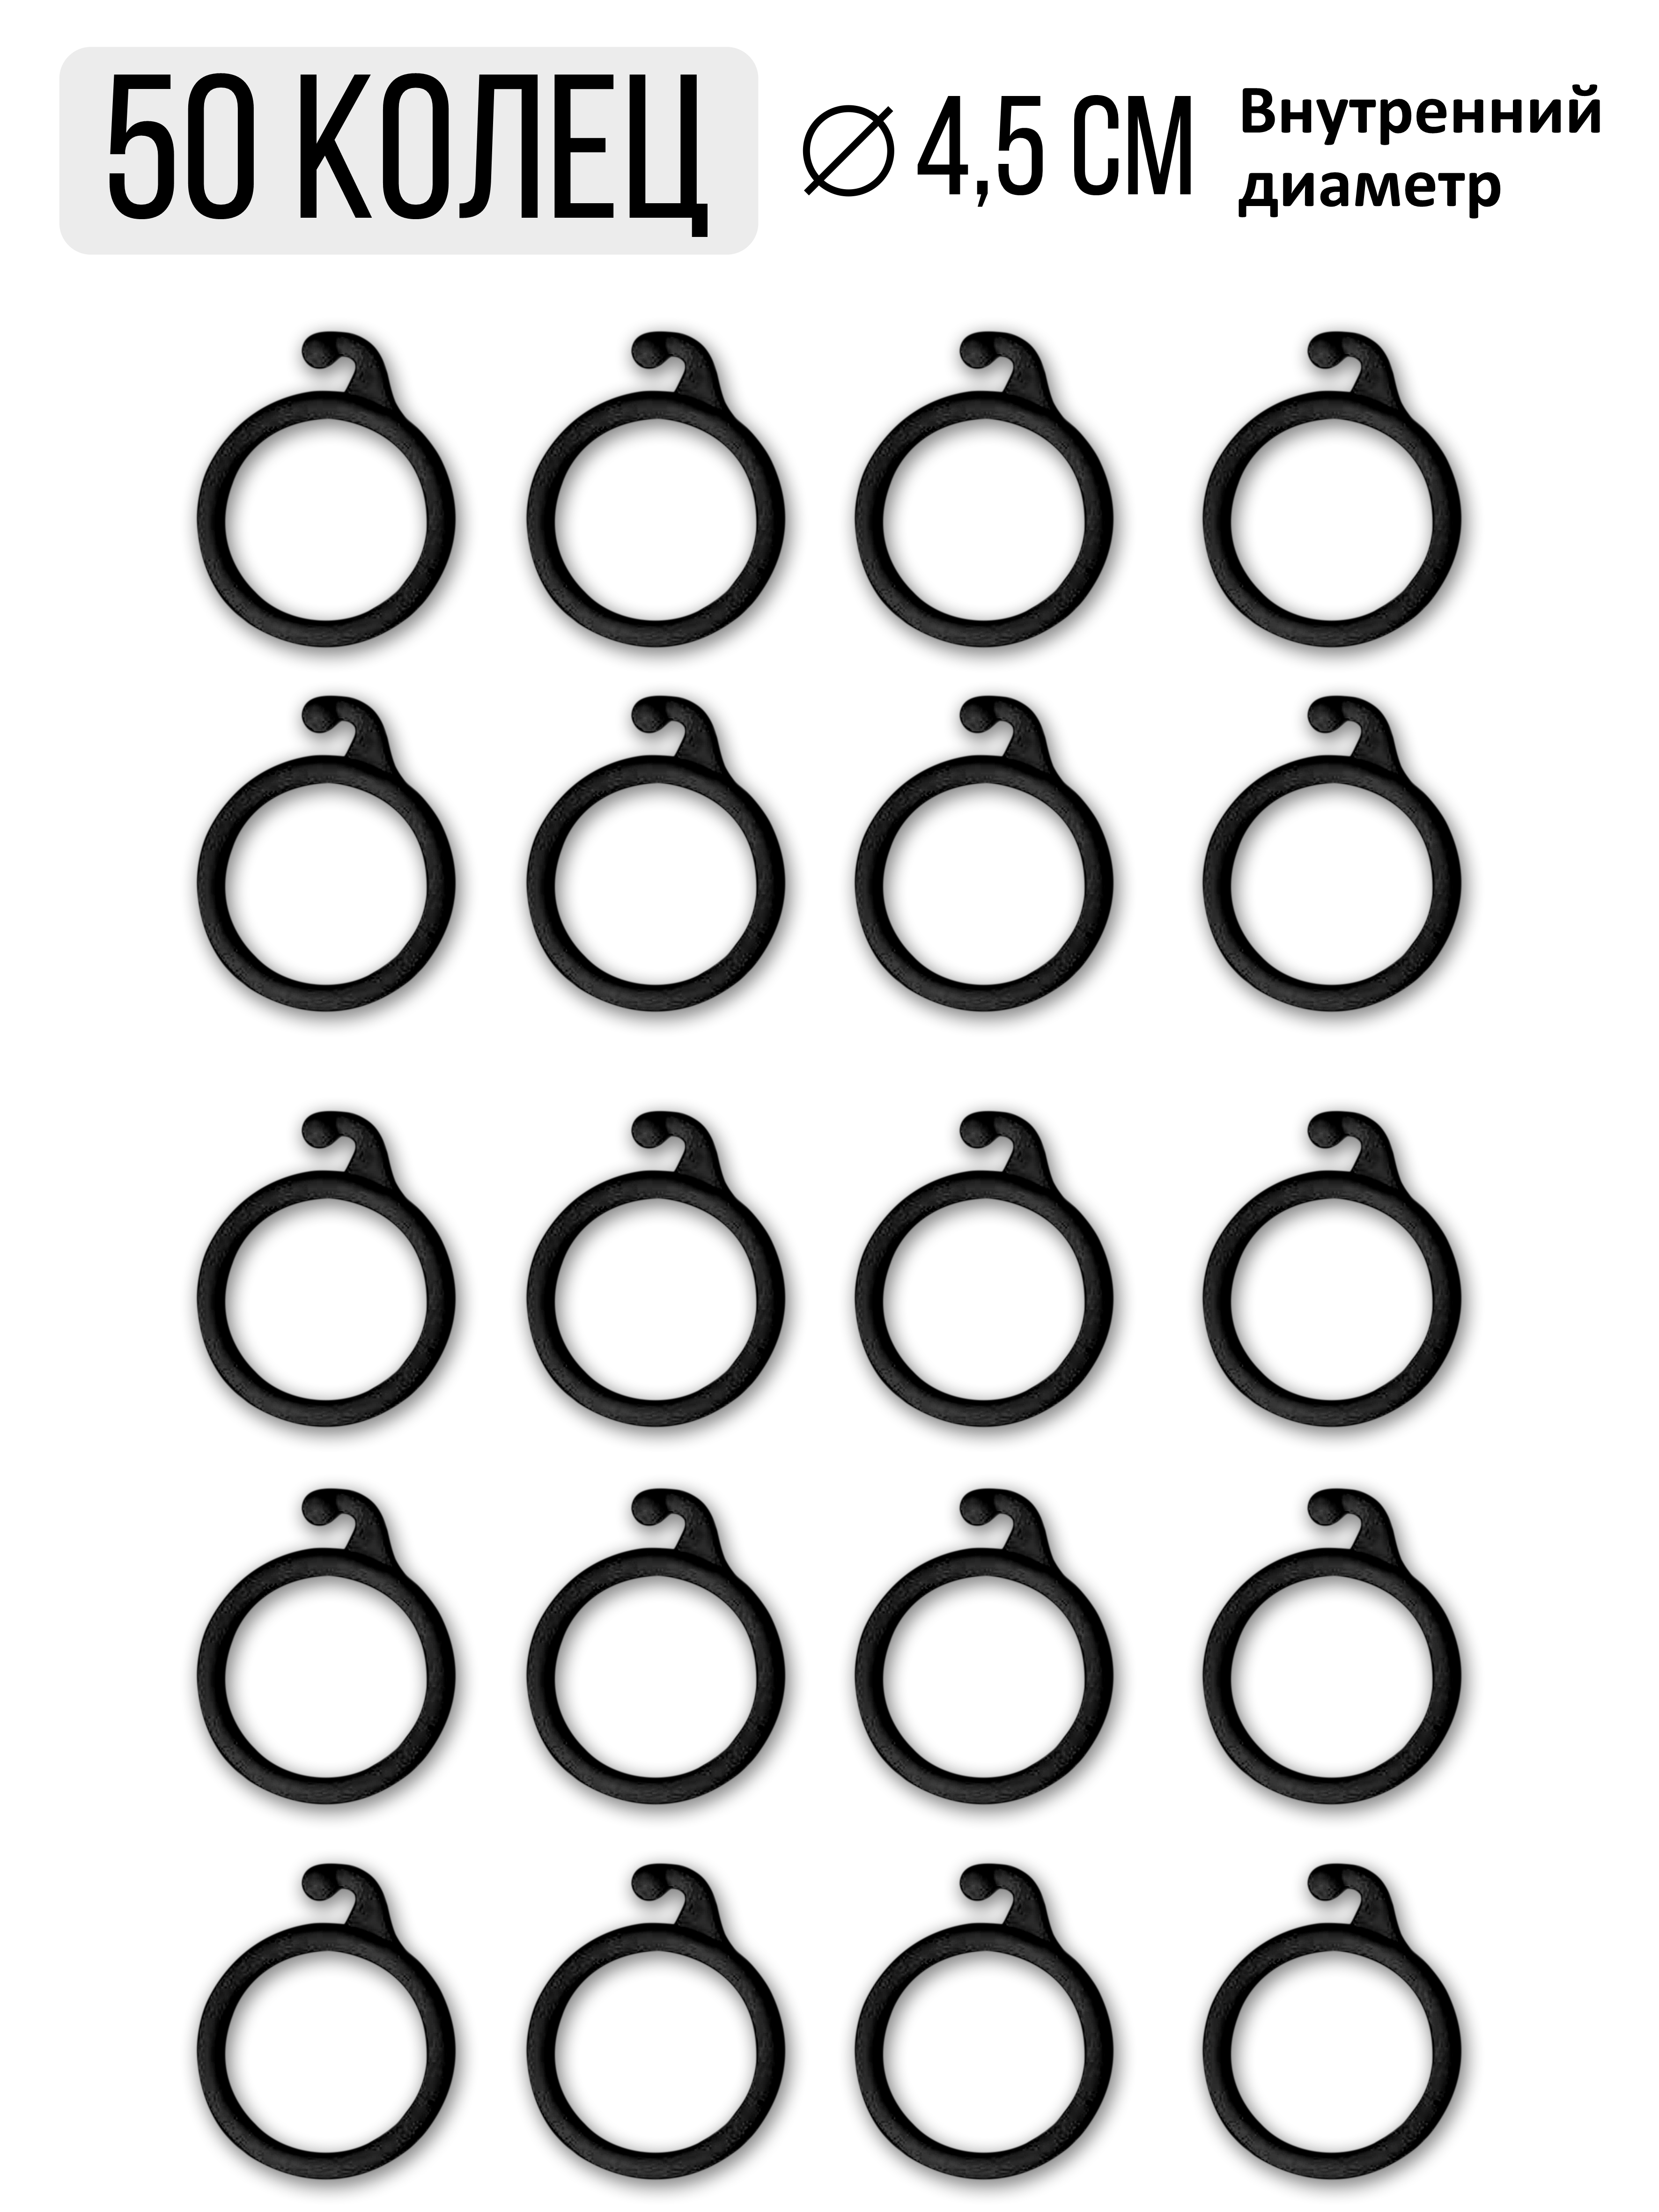 Пластиковые черные гардинные кольца для штор 4.5 см, 50 шт (крючок для .